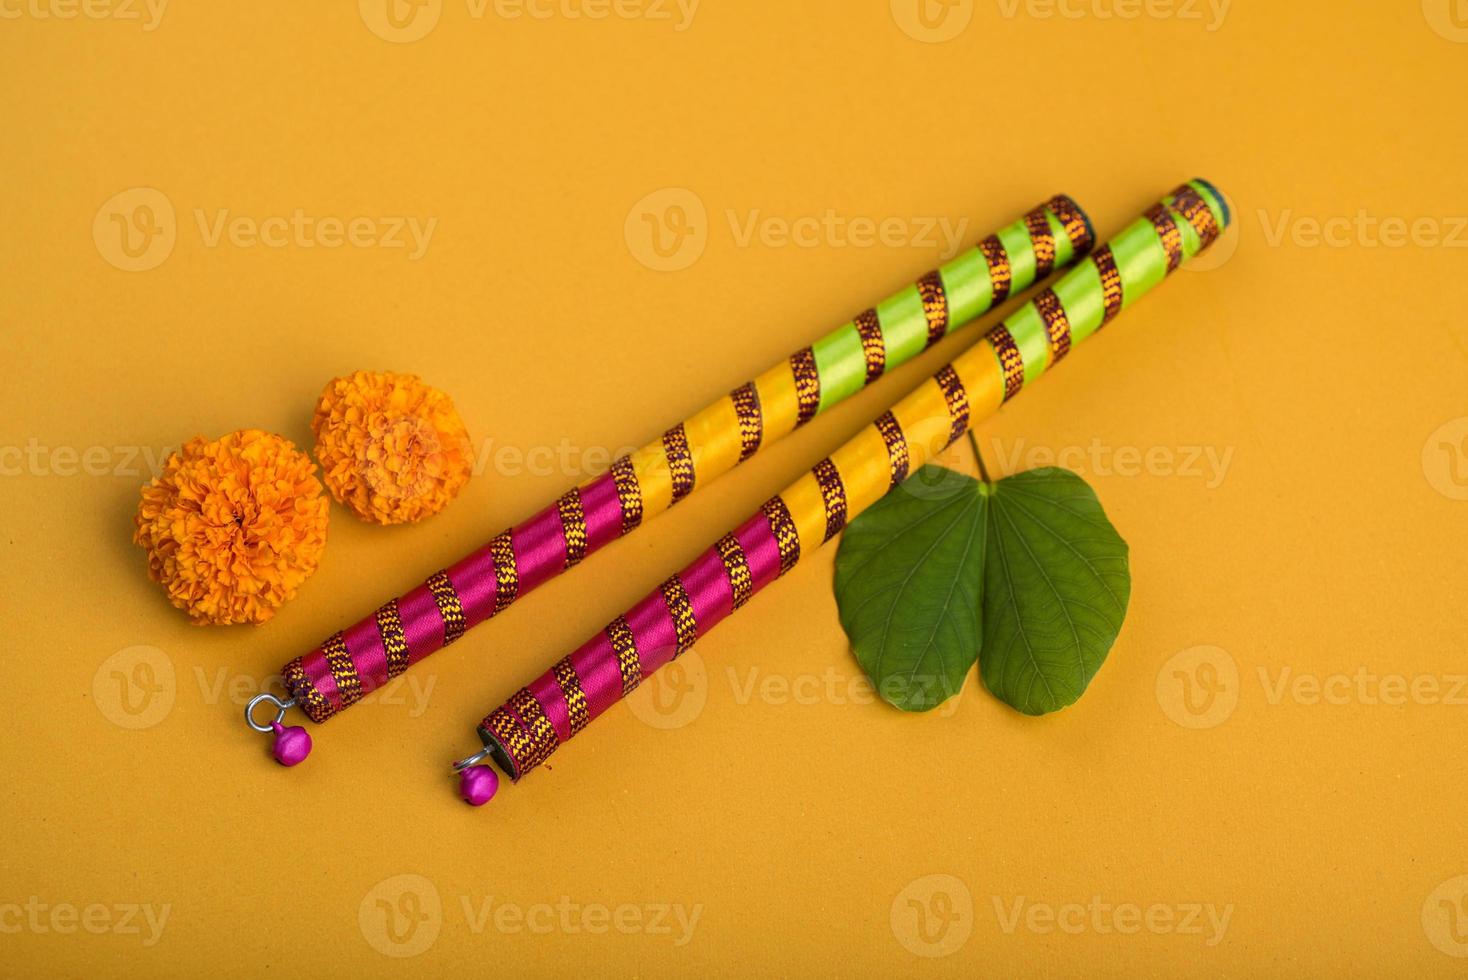 festival indien dussehra et navratri, montrant des fleurs de bauhinia racemosa et de souci avec des bâtons de dandiya. photo